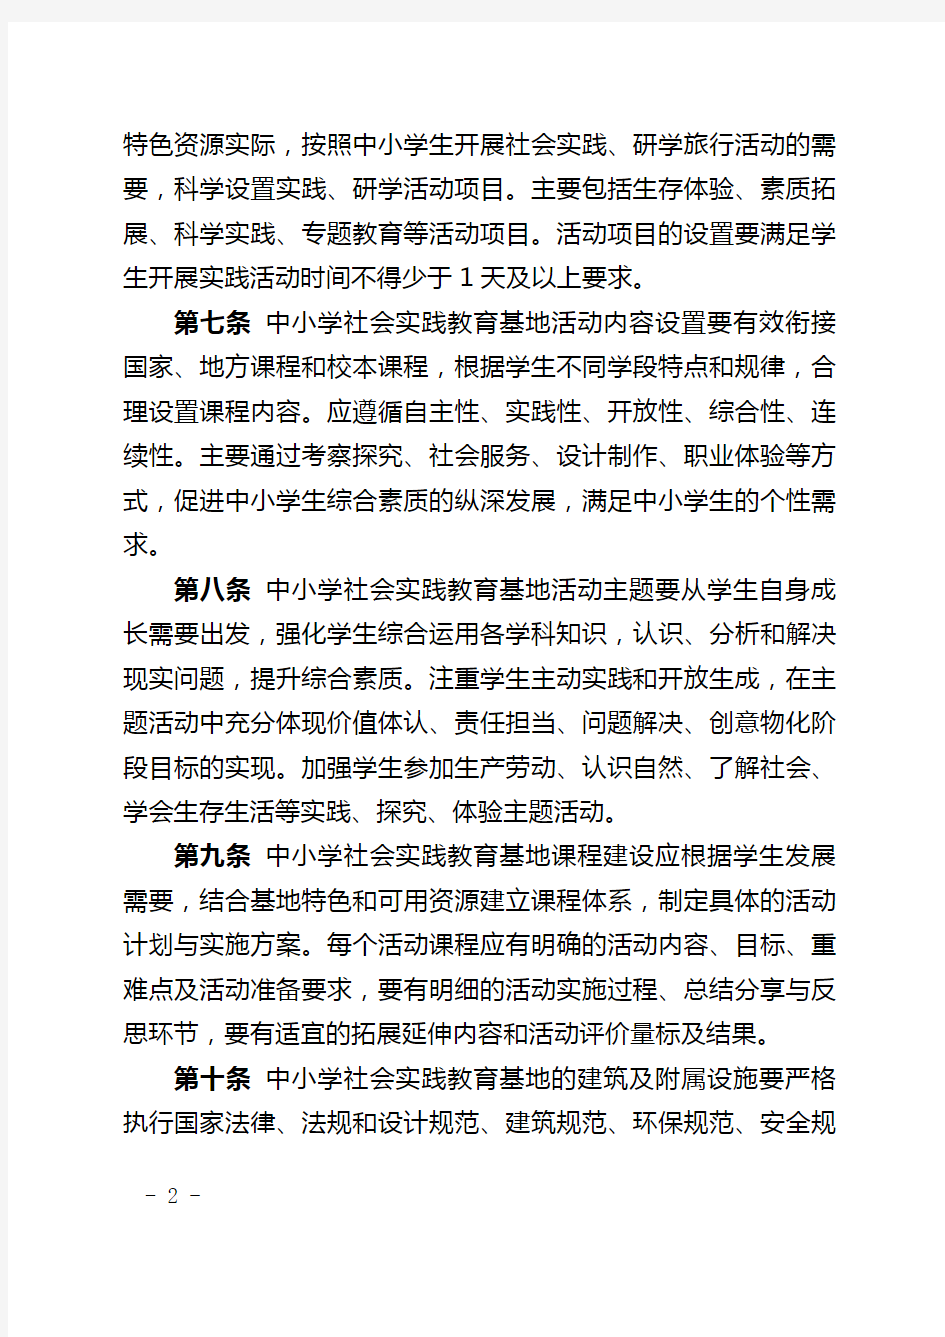 重庆市中小学社会实践教育基地建设指南